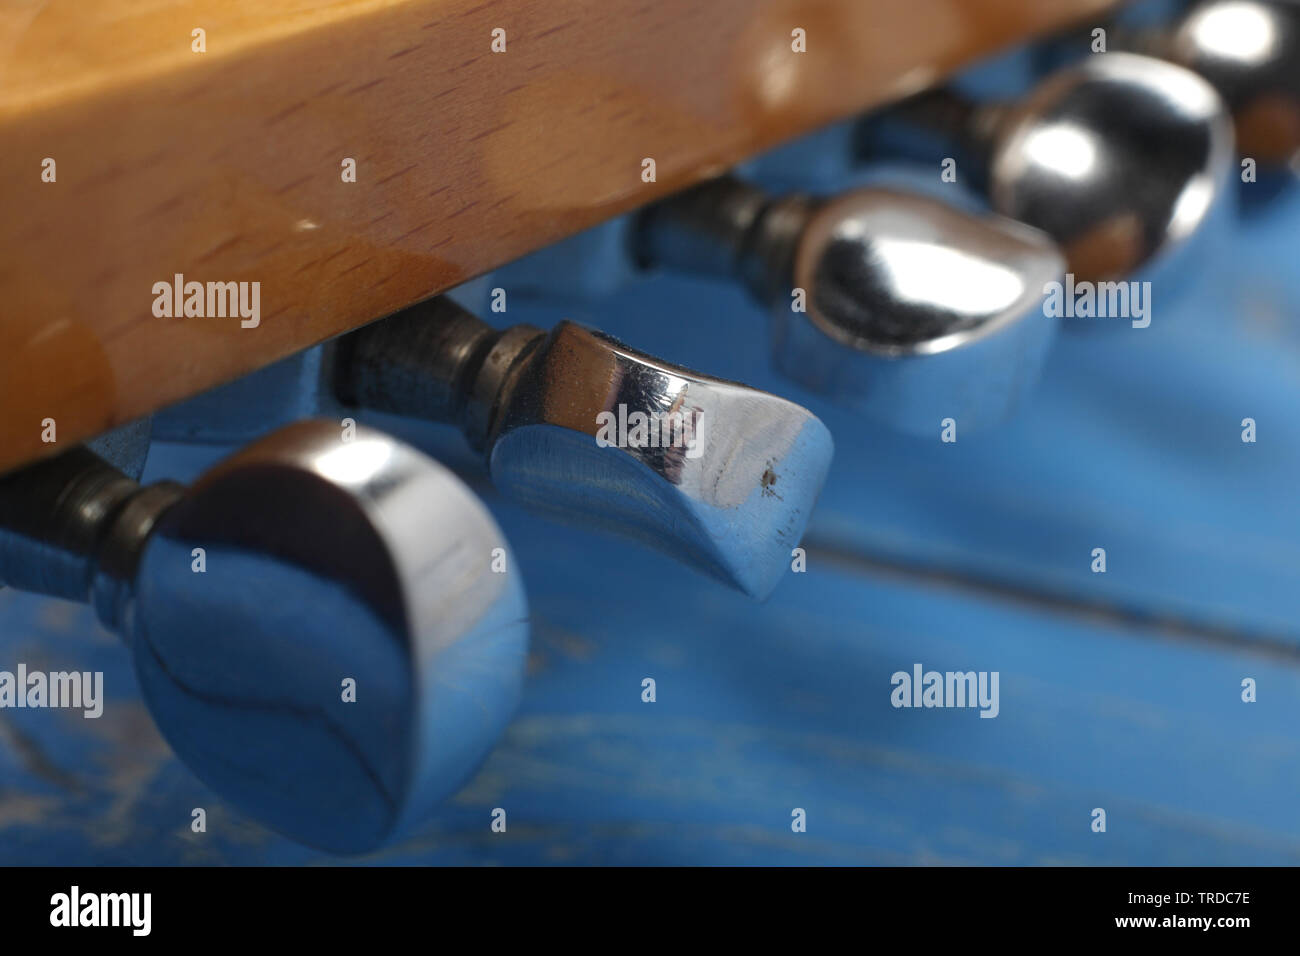 Musikinstrument - Fragment headstock peghead Hals tuning peg E-Gitarre auf einem blauen Holz Hintergrund. Stockfoto